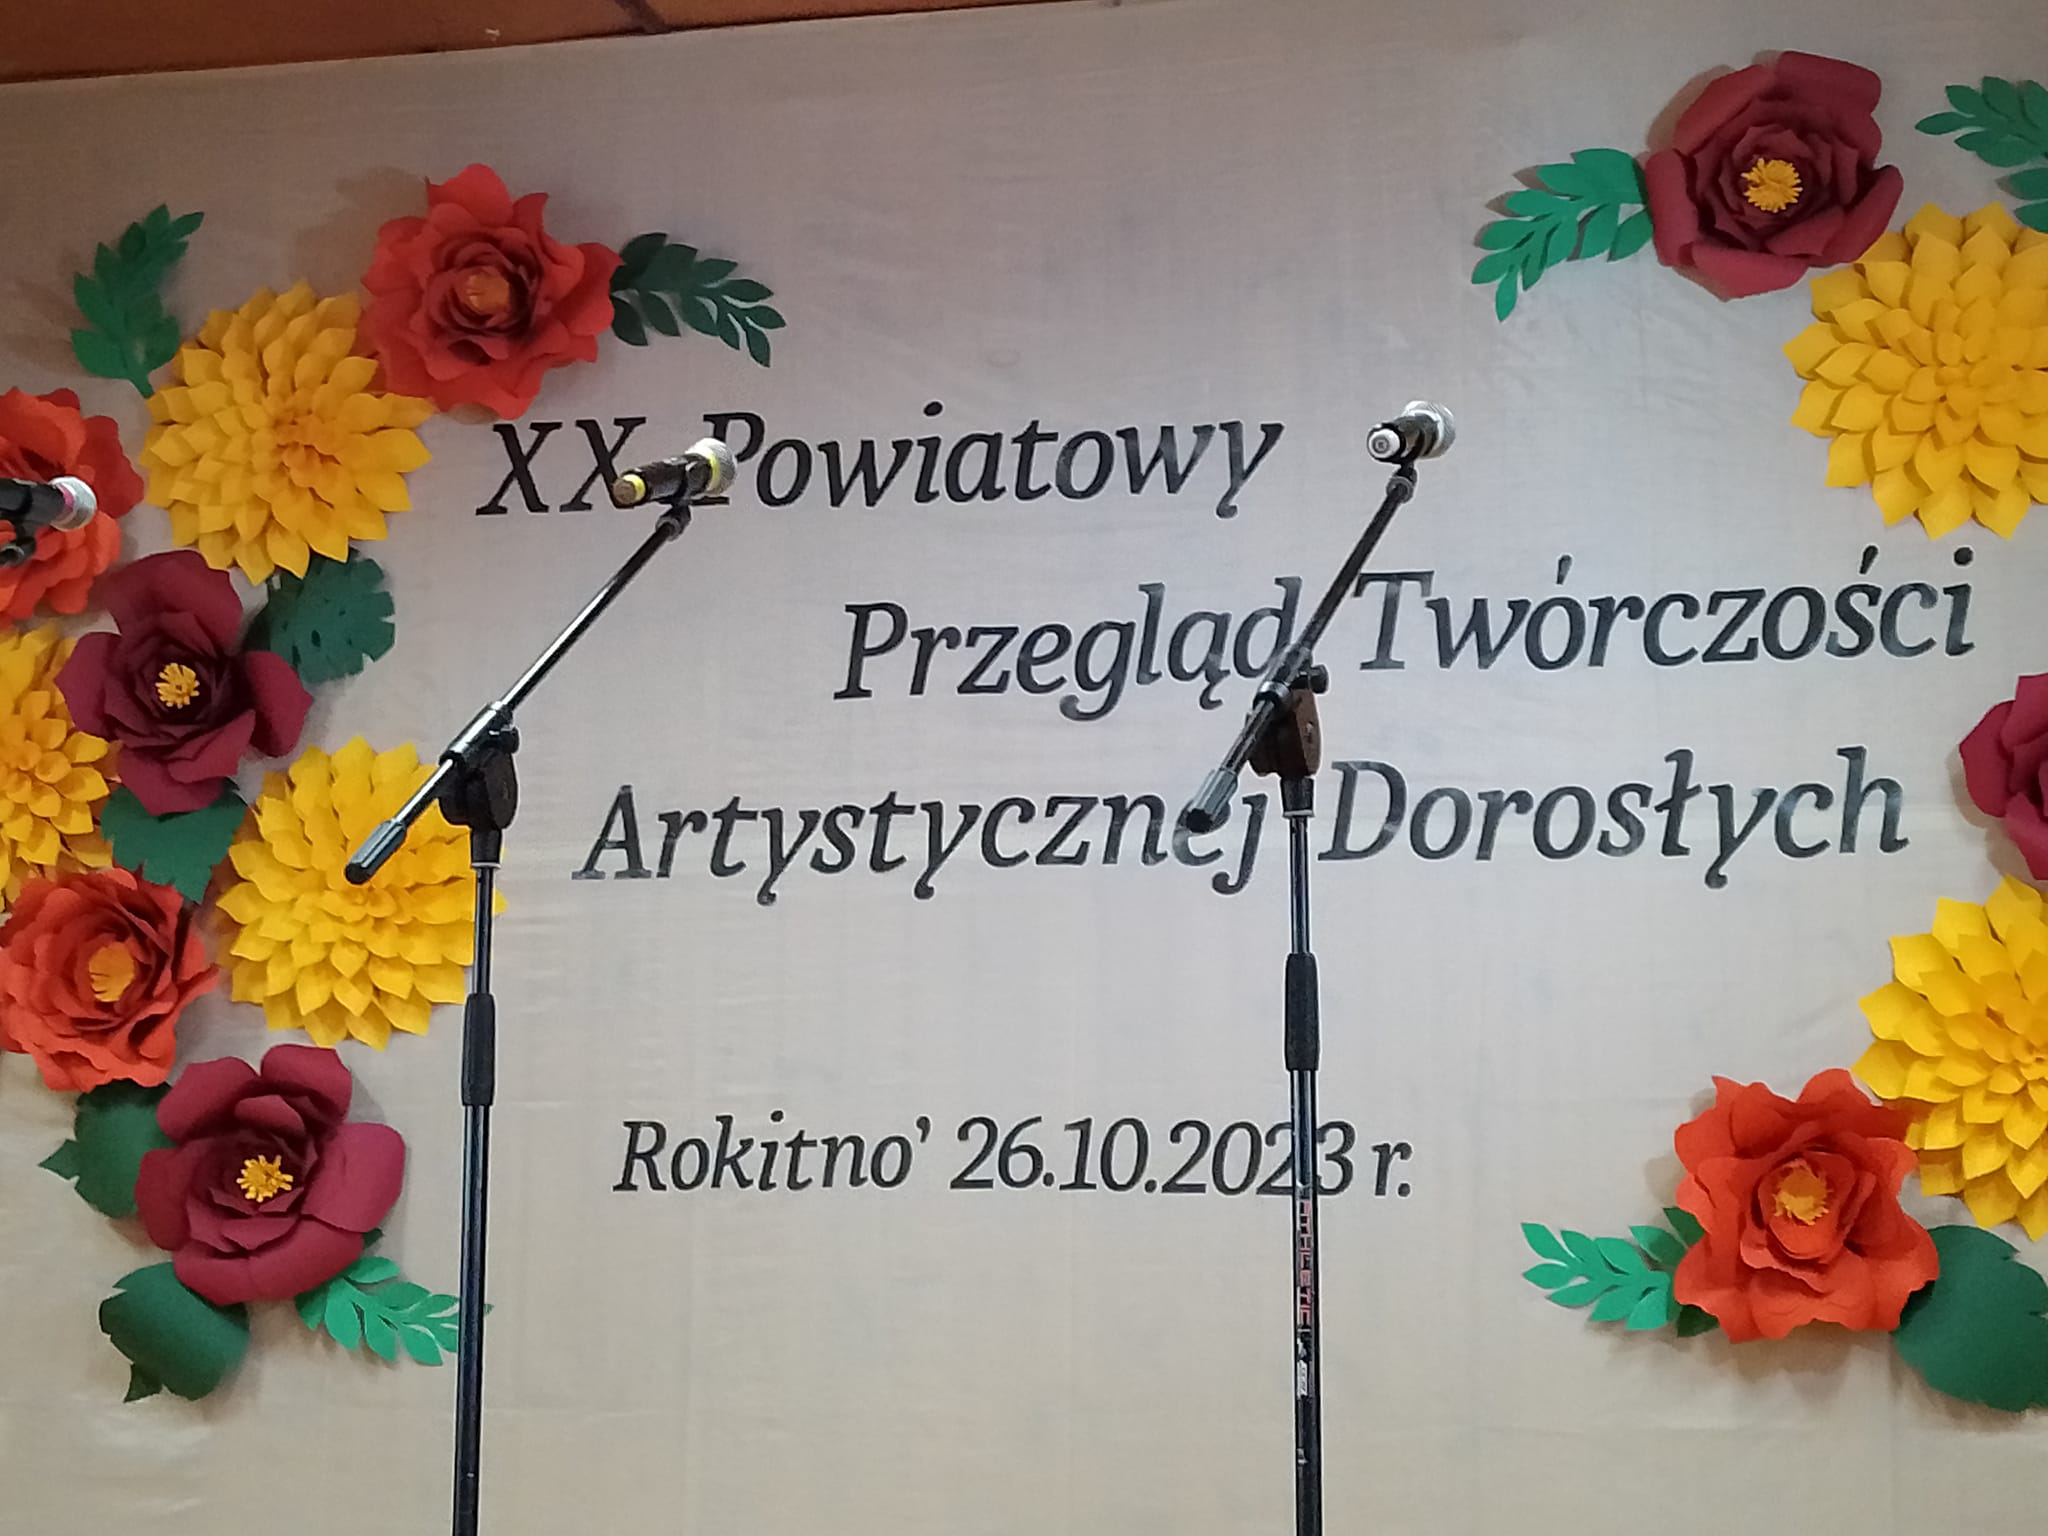 You are currently viewing XX Powiatowy Przegląd Twórczości Artystycznej Dorosłych w Rokitnie